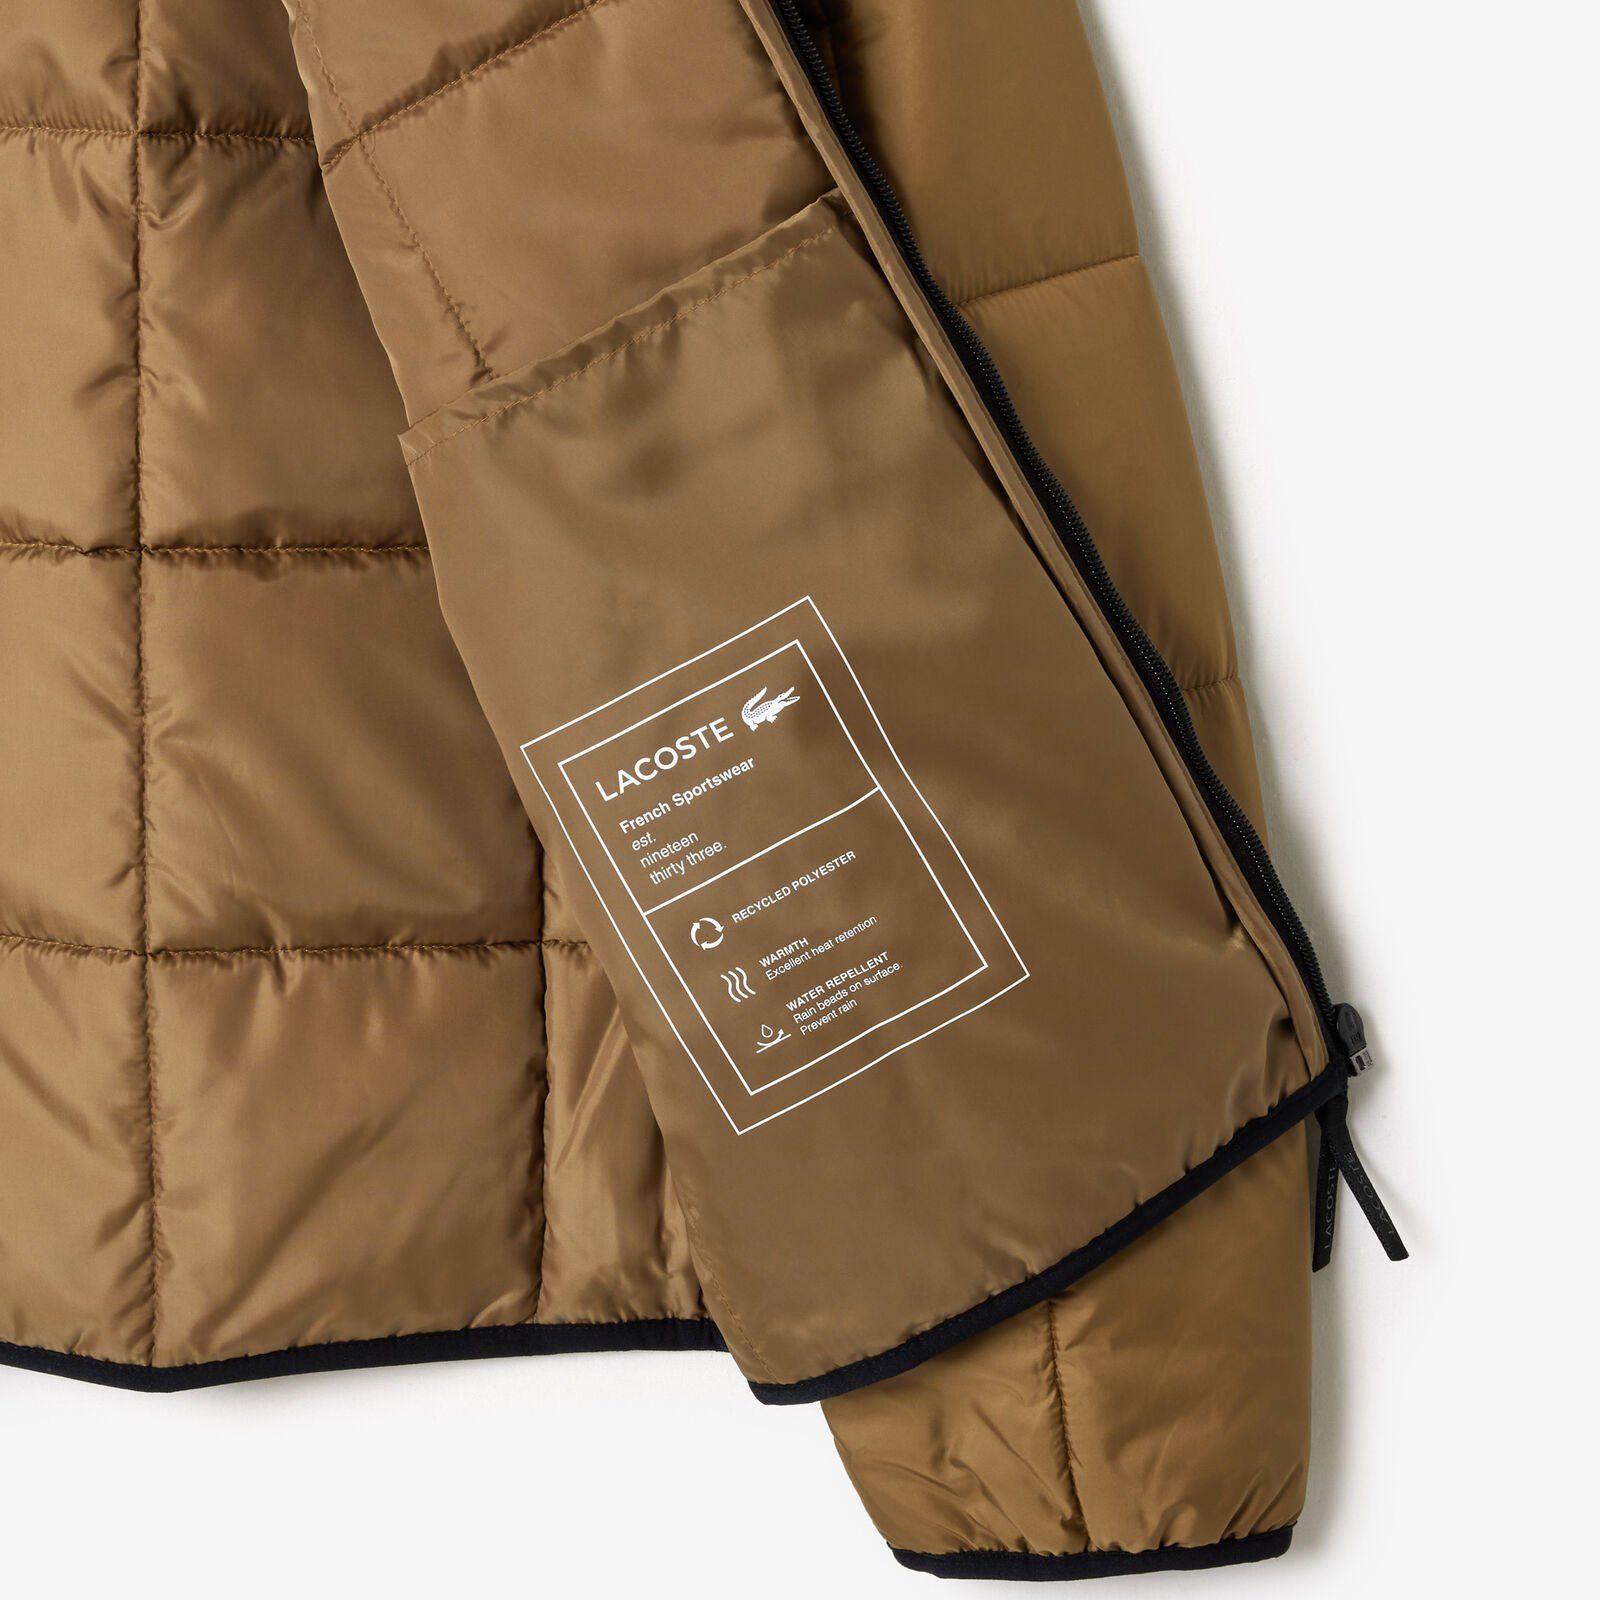 Lacoste Outdoorjacke wasserabweisende marron-six Jacke / Innenfächern noir mit praktischen QIN